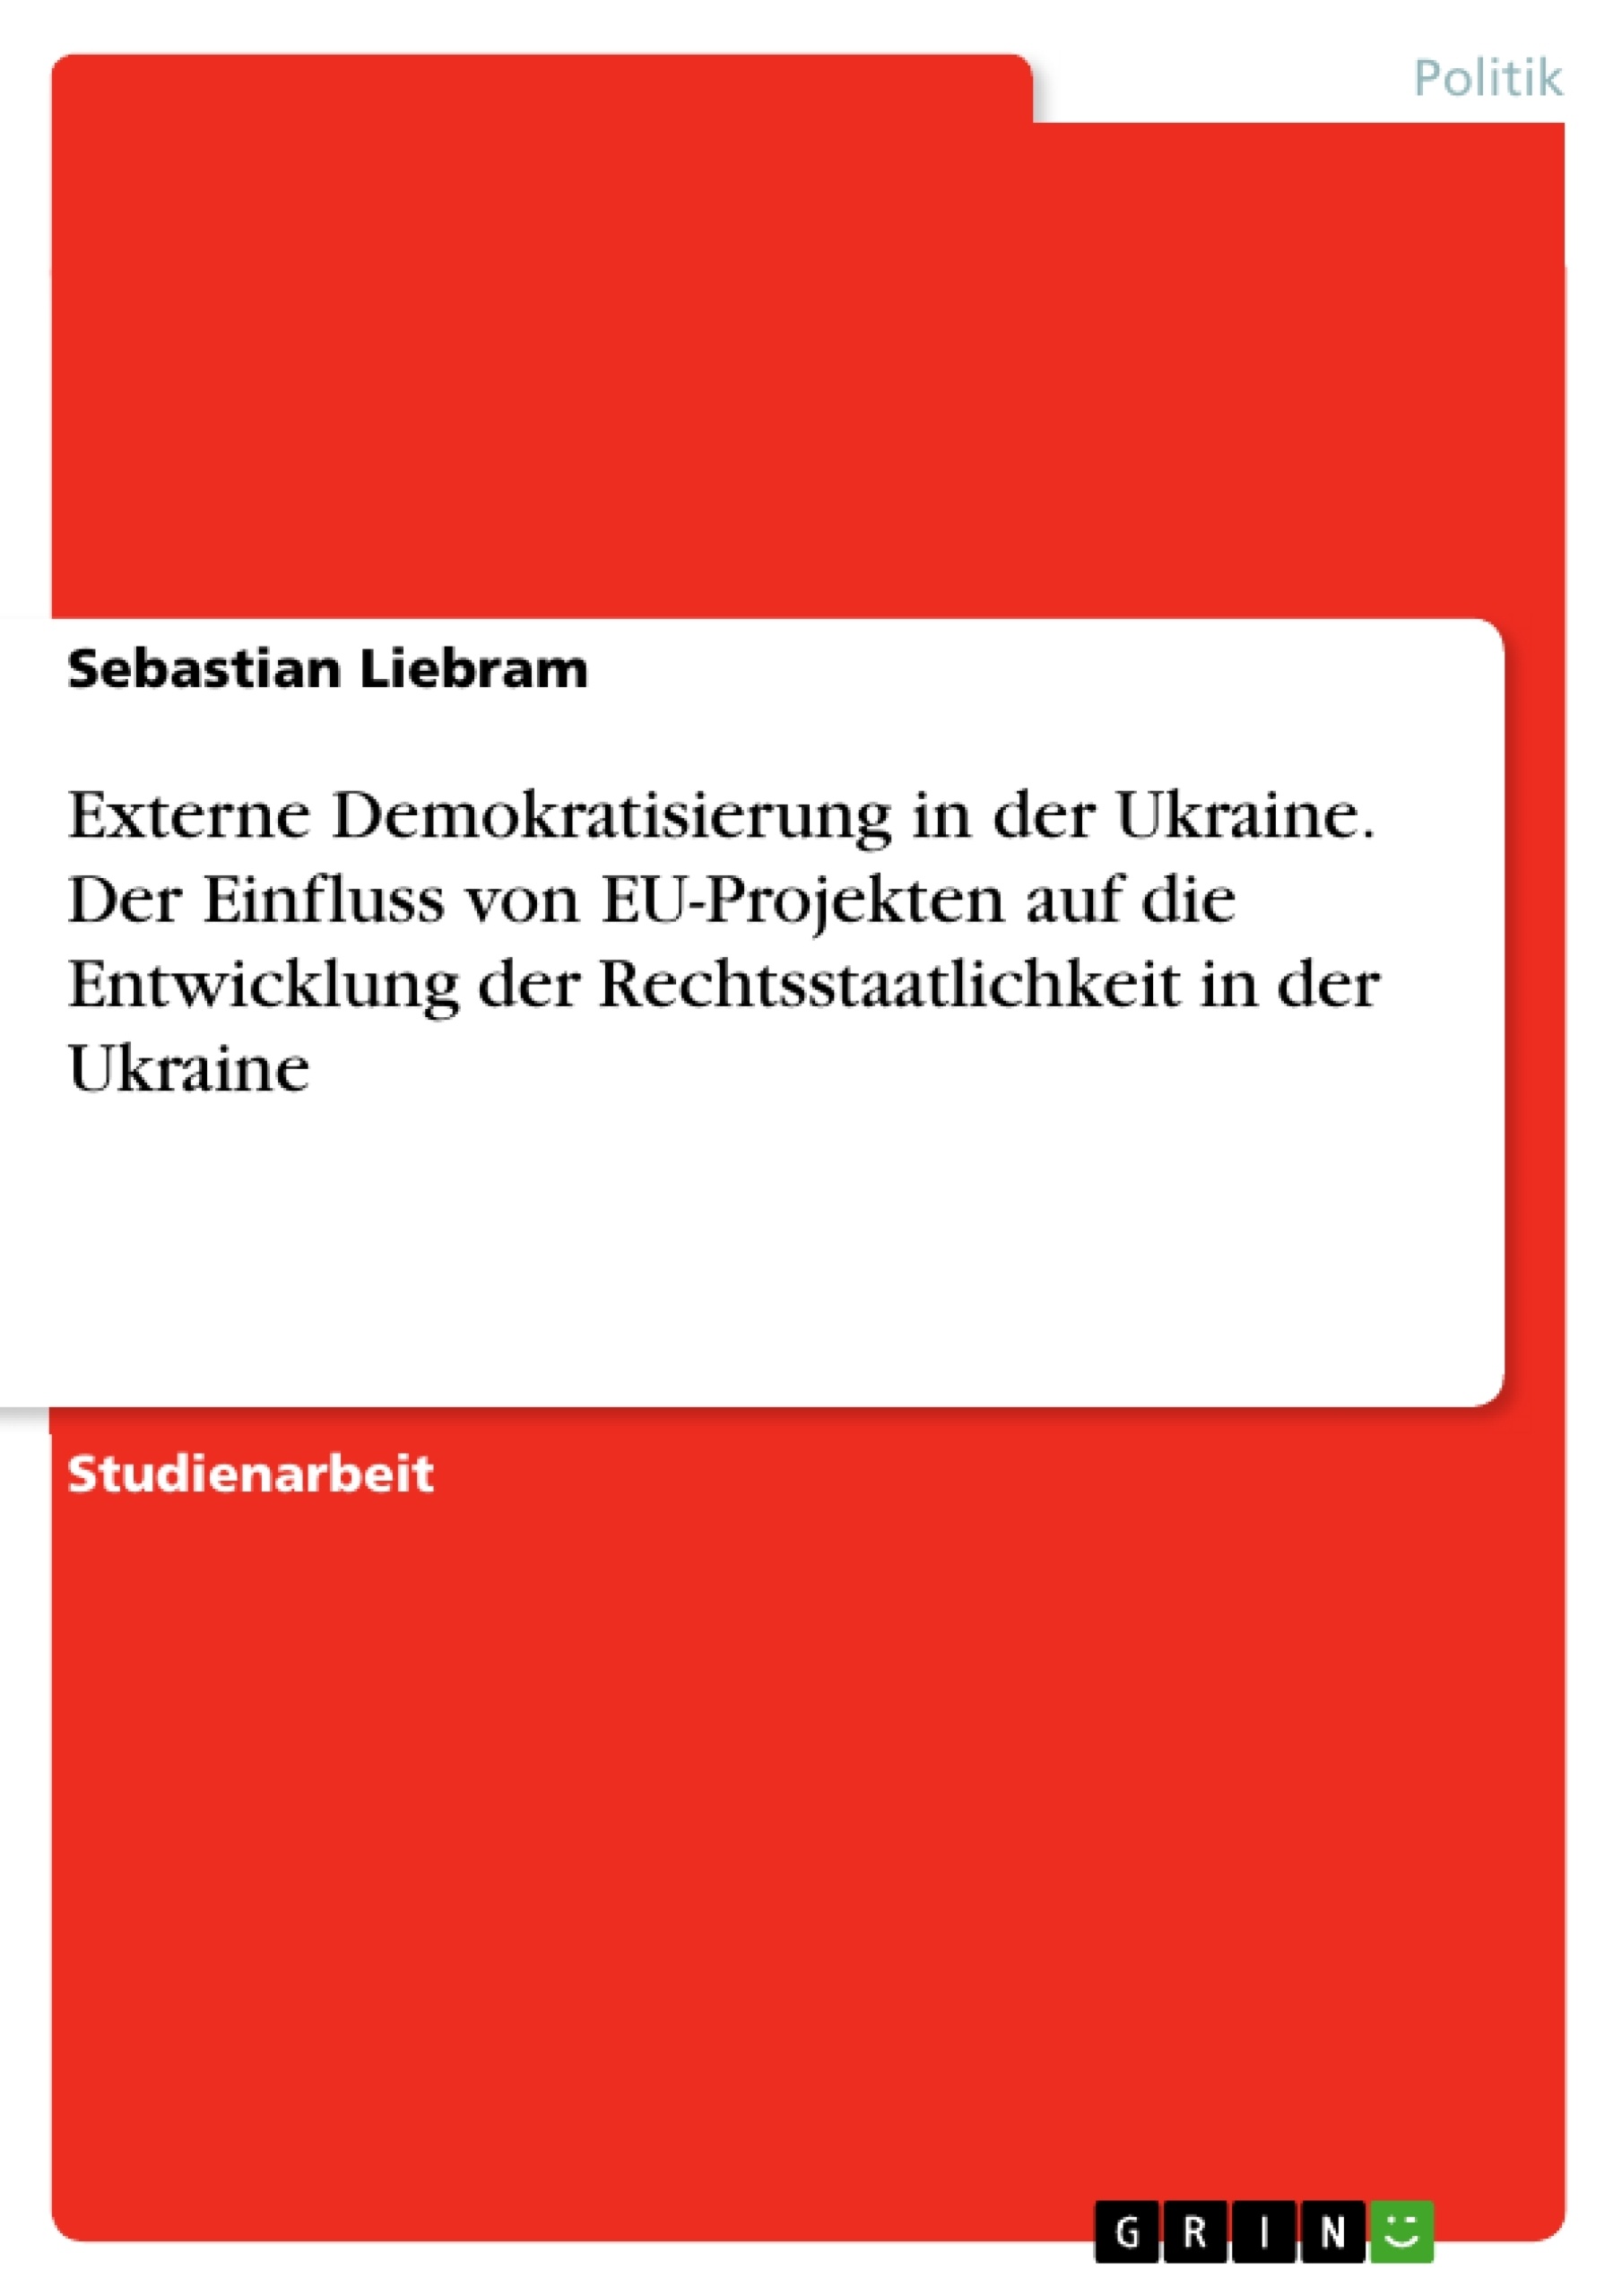 Titel: Externe Demokratisierung in der Ukraine. Der Einfluss von EU-Projekten auf die Entwicklung der Rechtsstaatlichkeit in der Ukraine